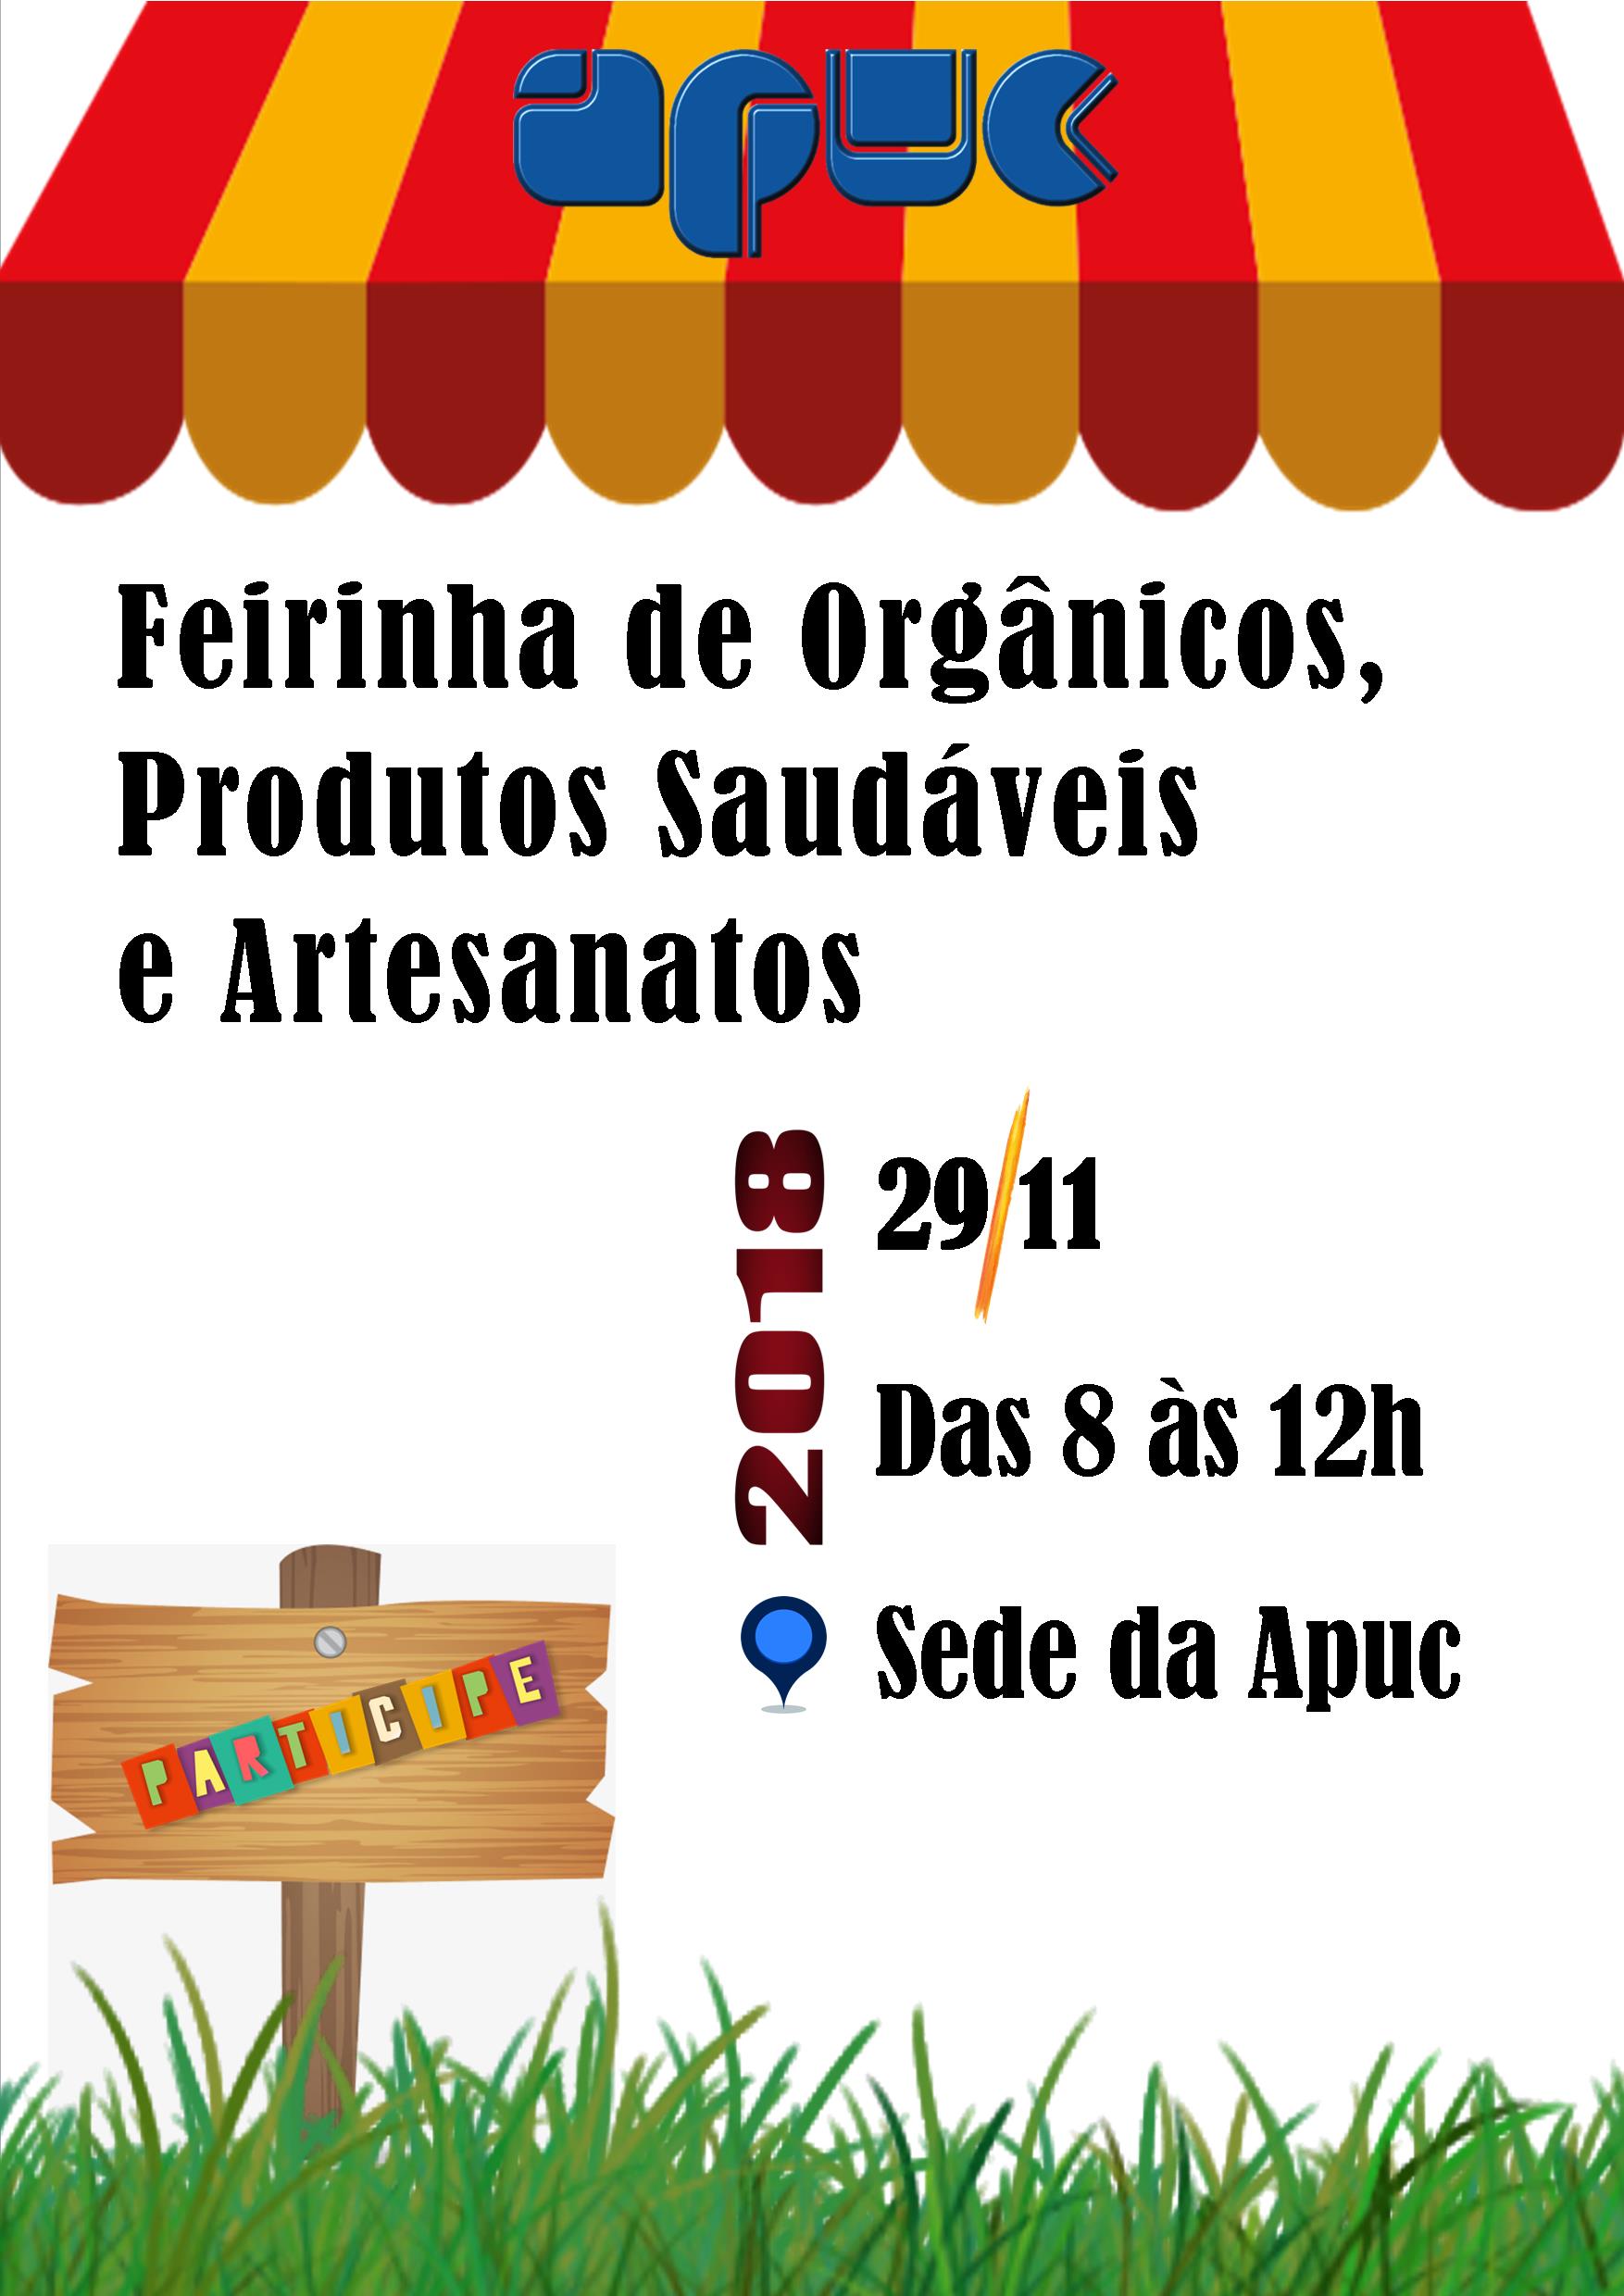 14.11.2018 Feirinha de Organicos e Produtos Saudaveis